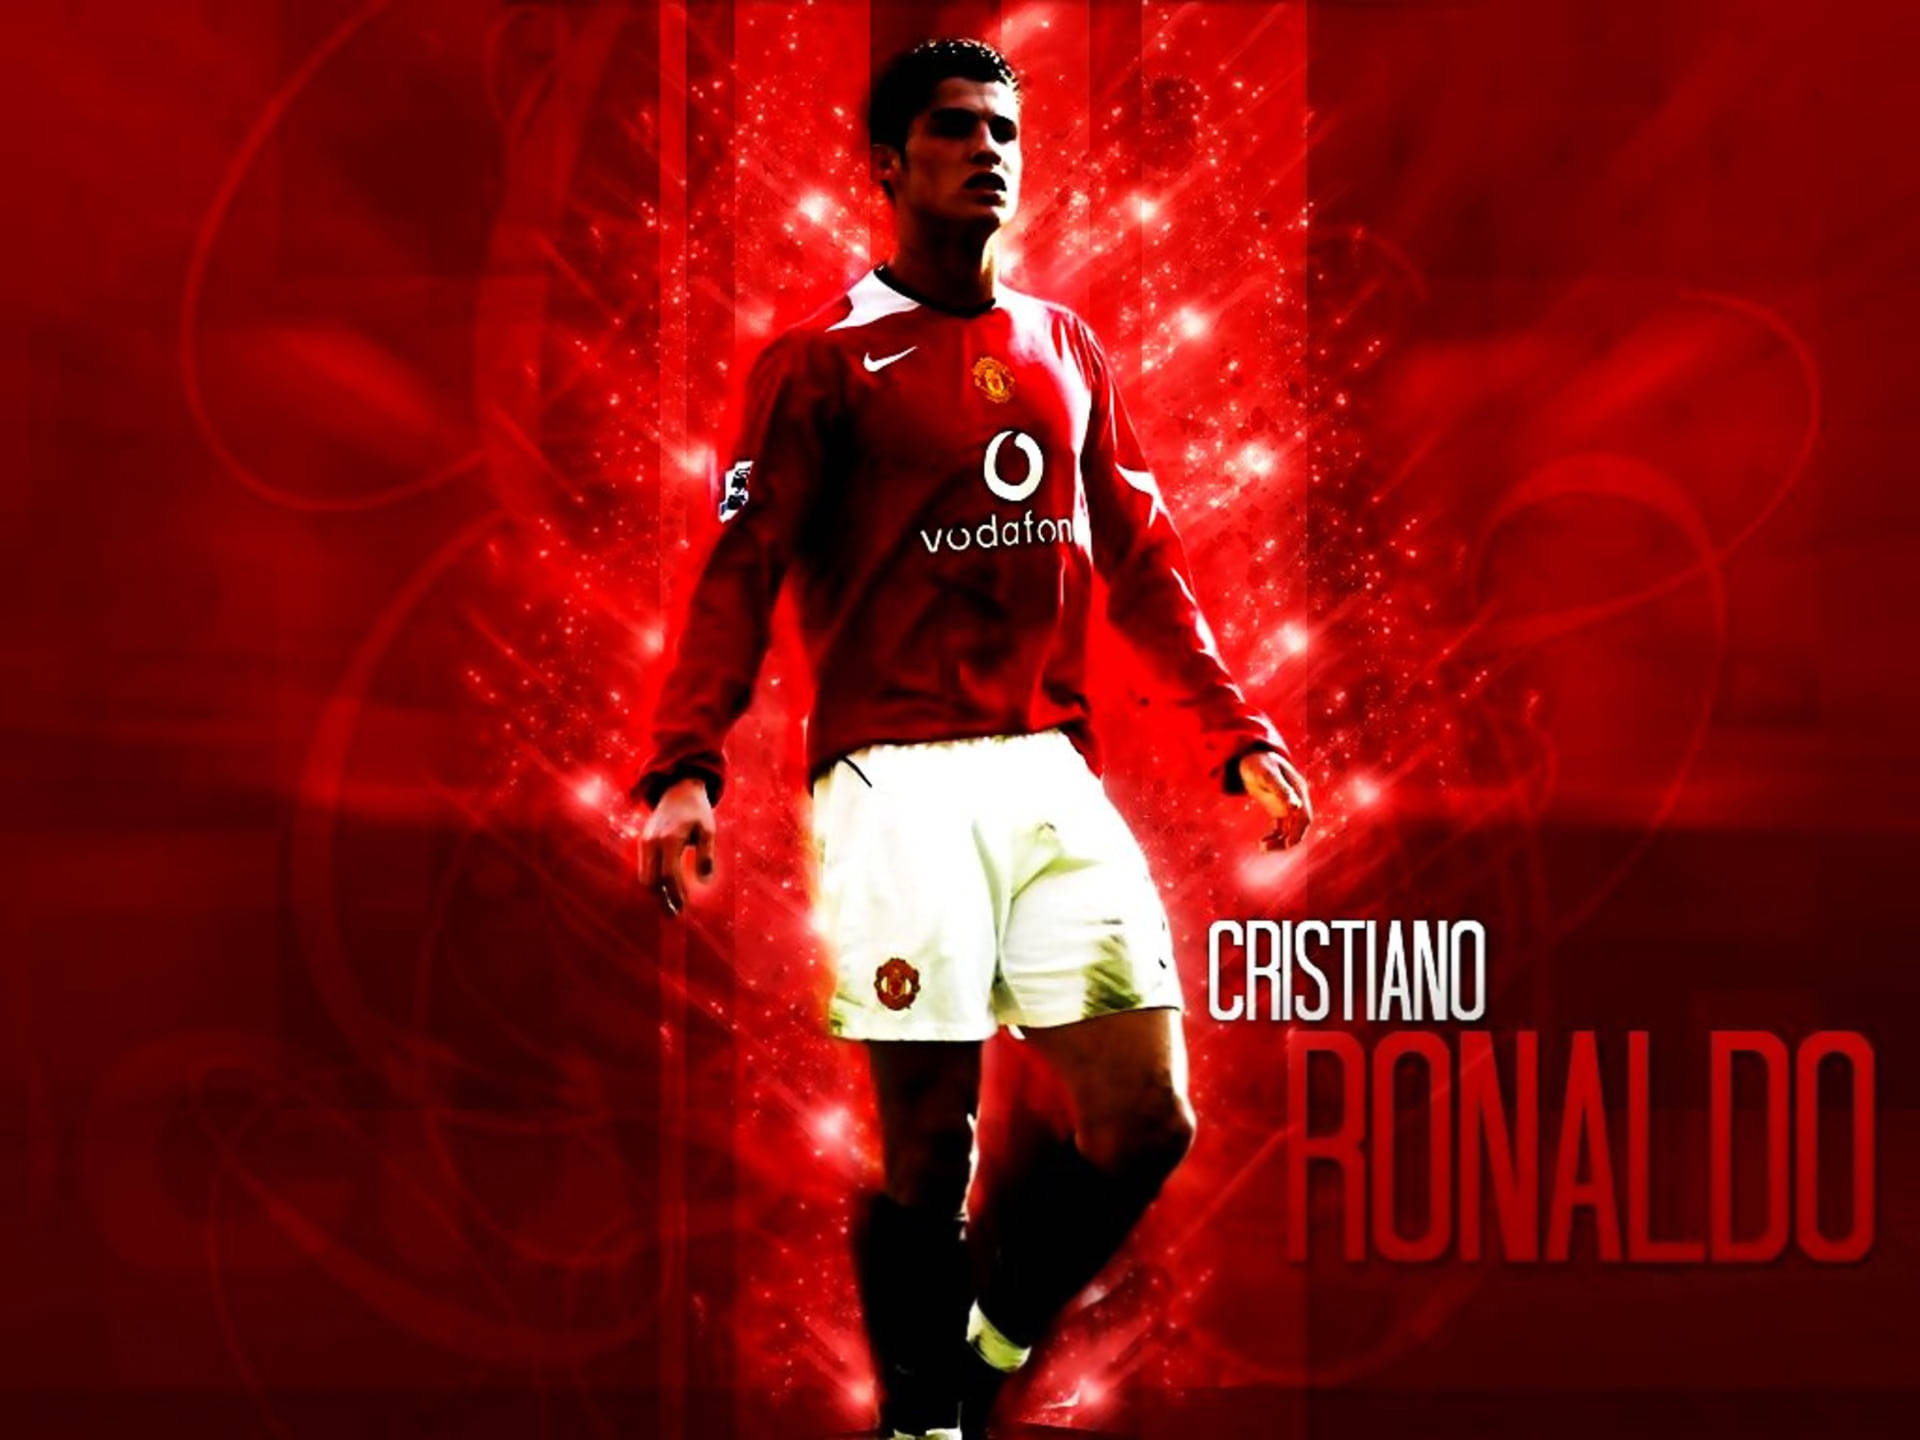 Ronaldo là một trong những cầu thủ vĩ đại nhất trong lịch sử bóng đá. Xem hình nền Ronaldo để cảm nhận được sức mạnh và tài năng của ngôi sao này.